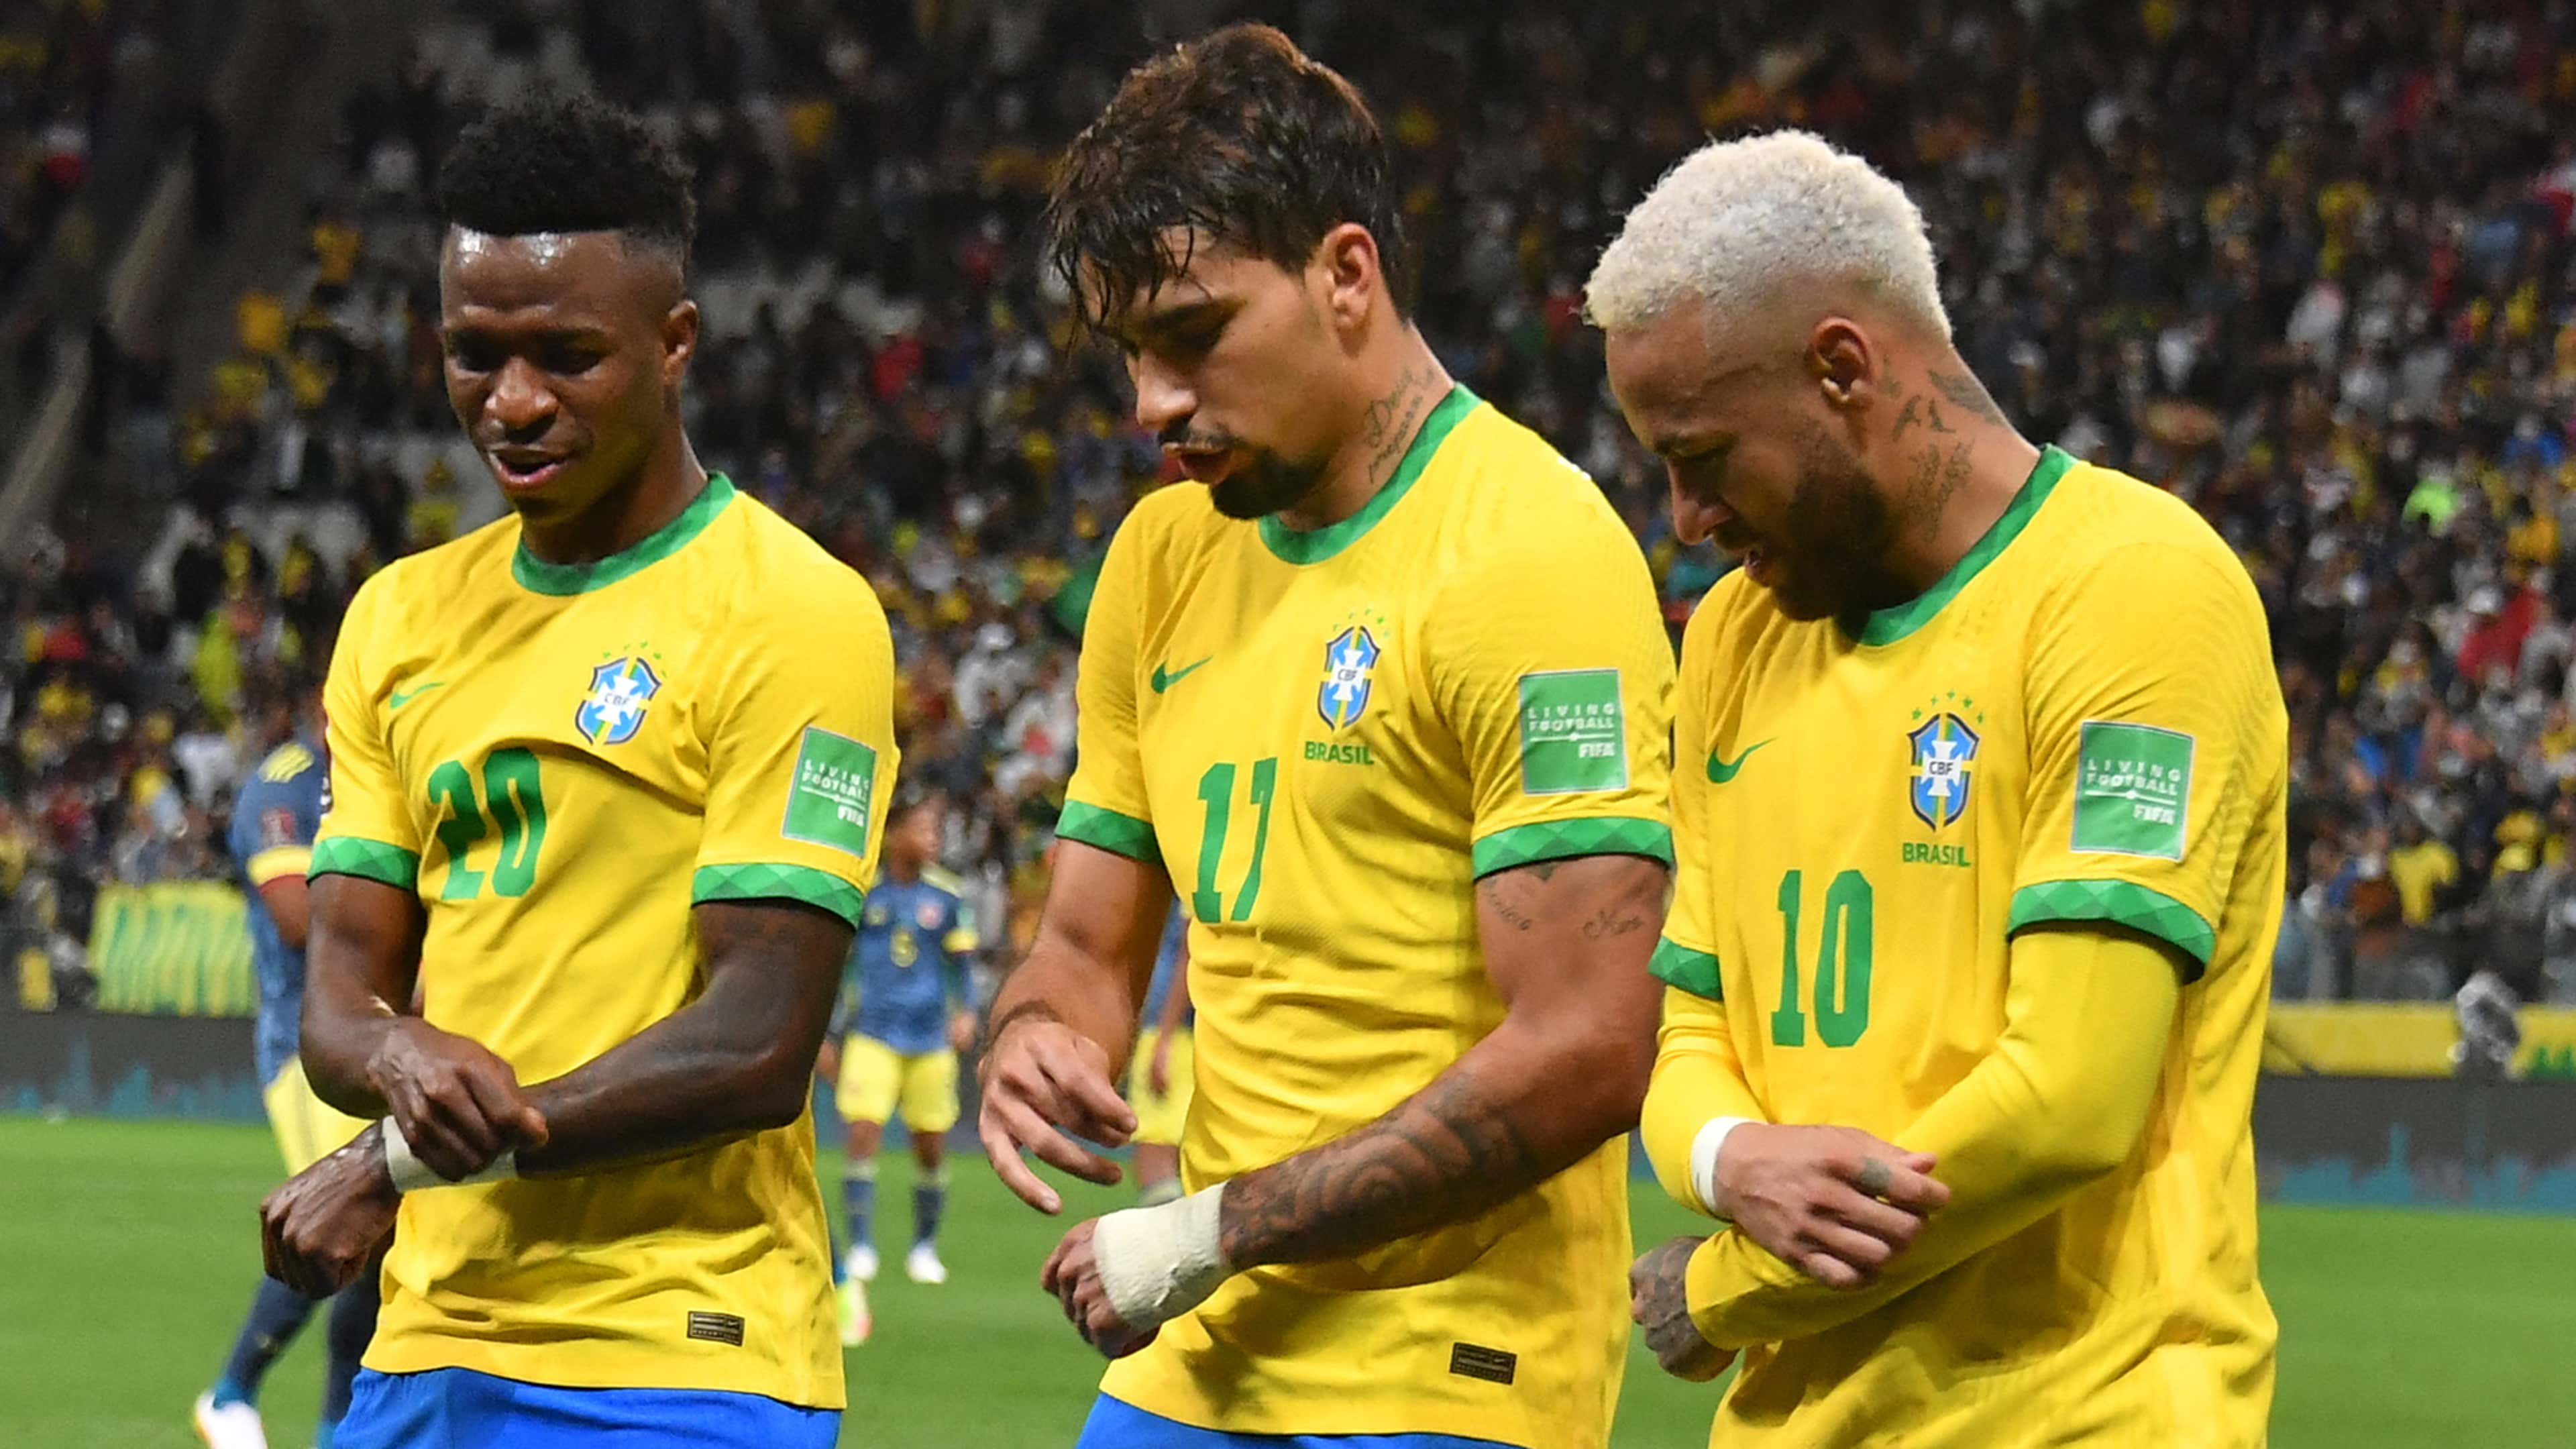 BRASIL X CORÉIA DO SUL AO VIVO ONLINE: veja onde assistir online grátis o  jogo do Brasil pela Copa do Mundo 2022